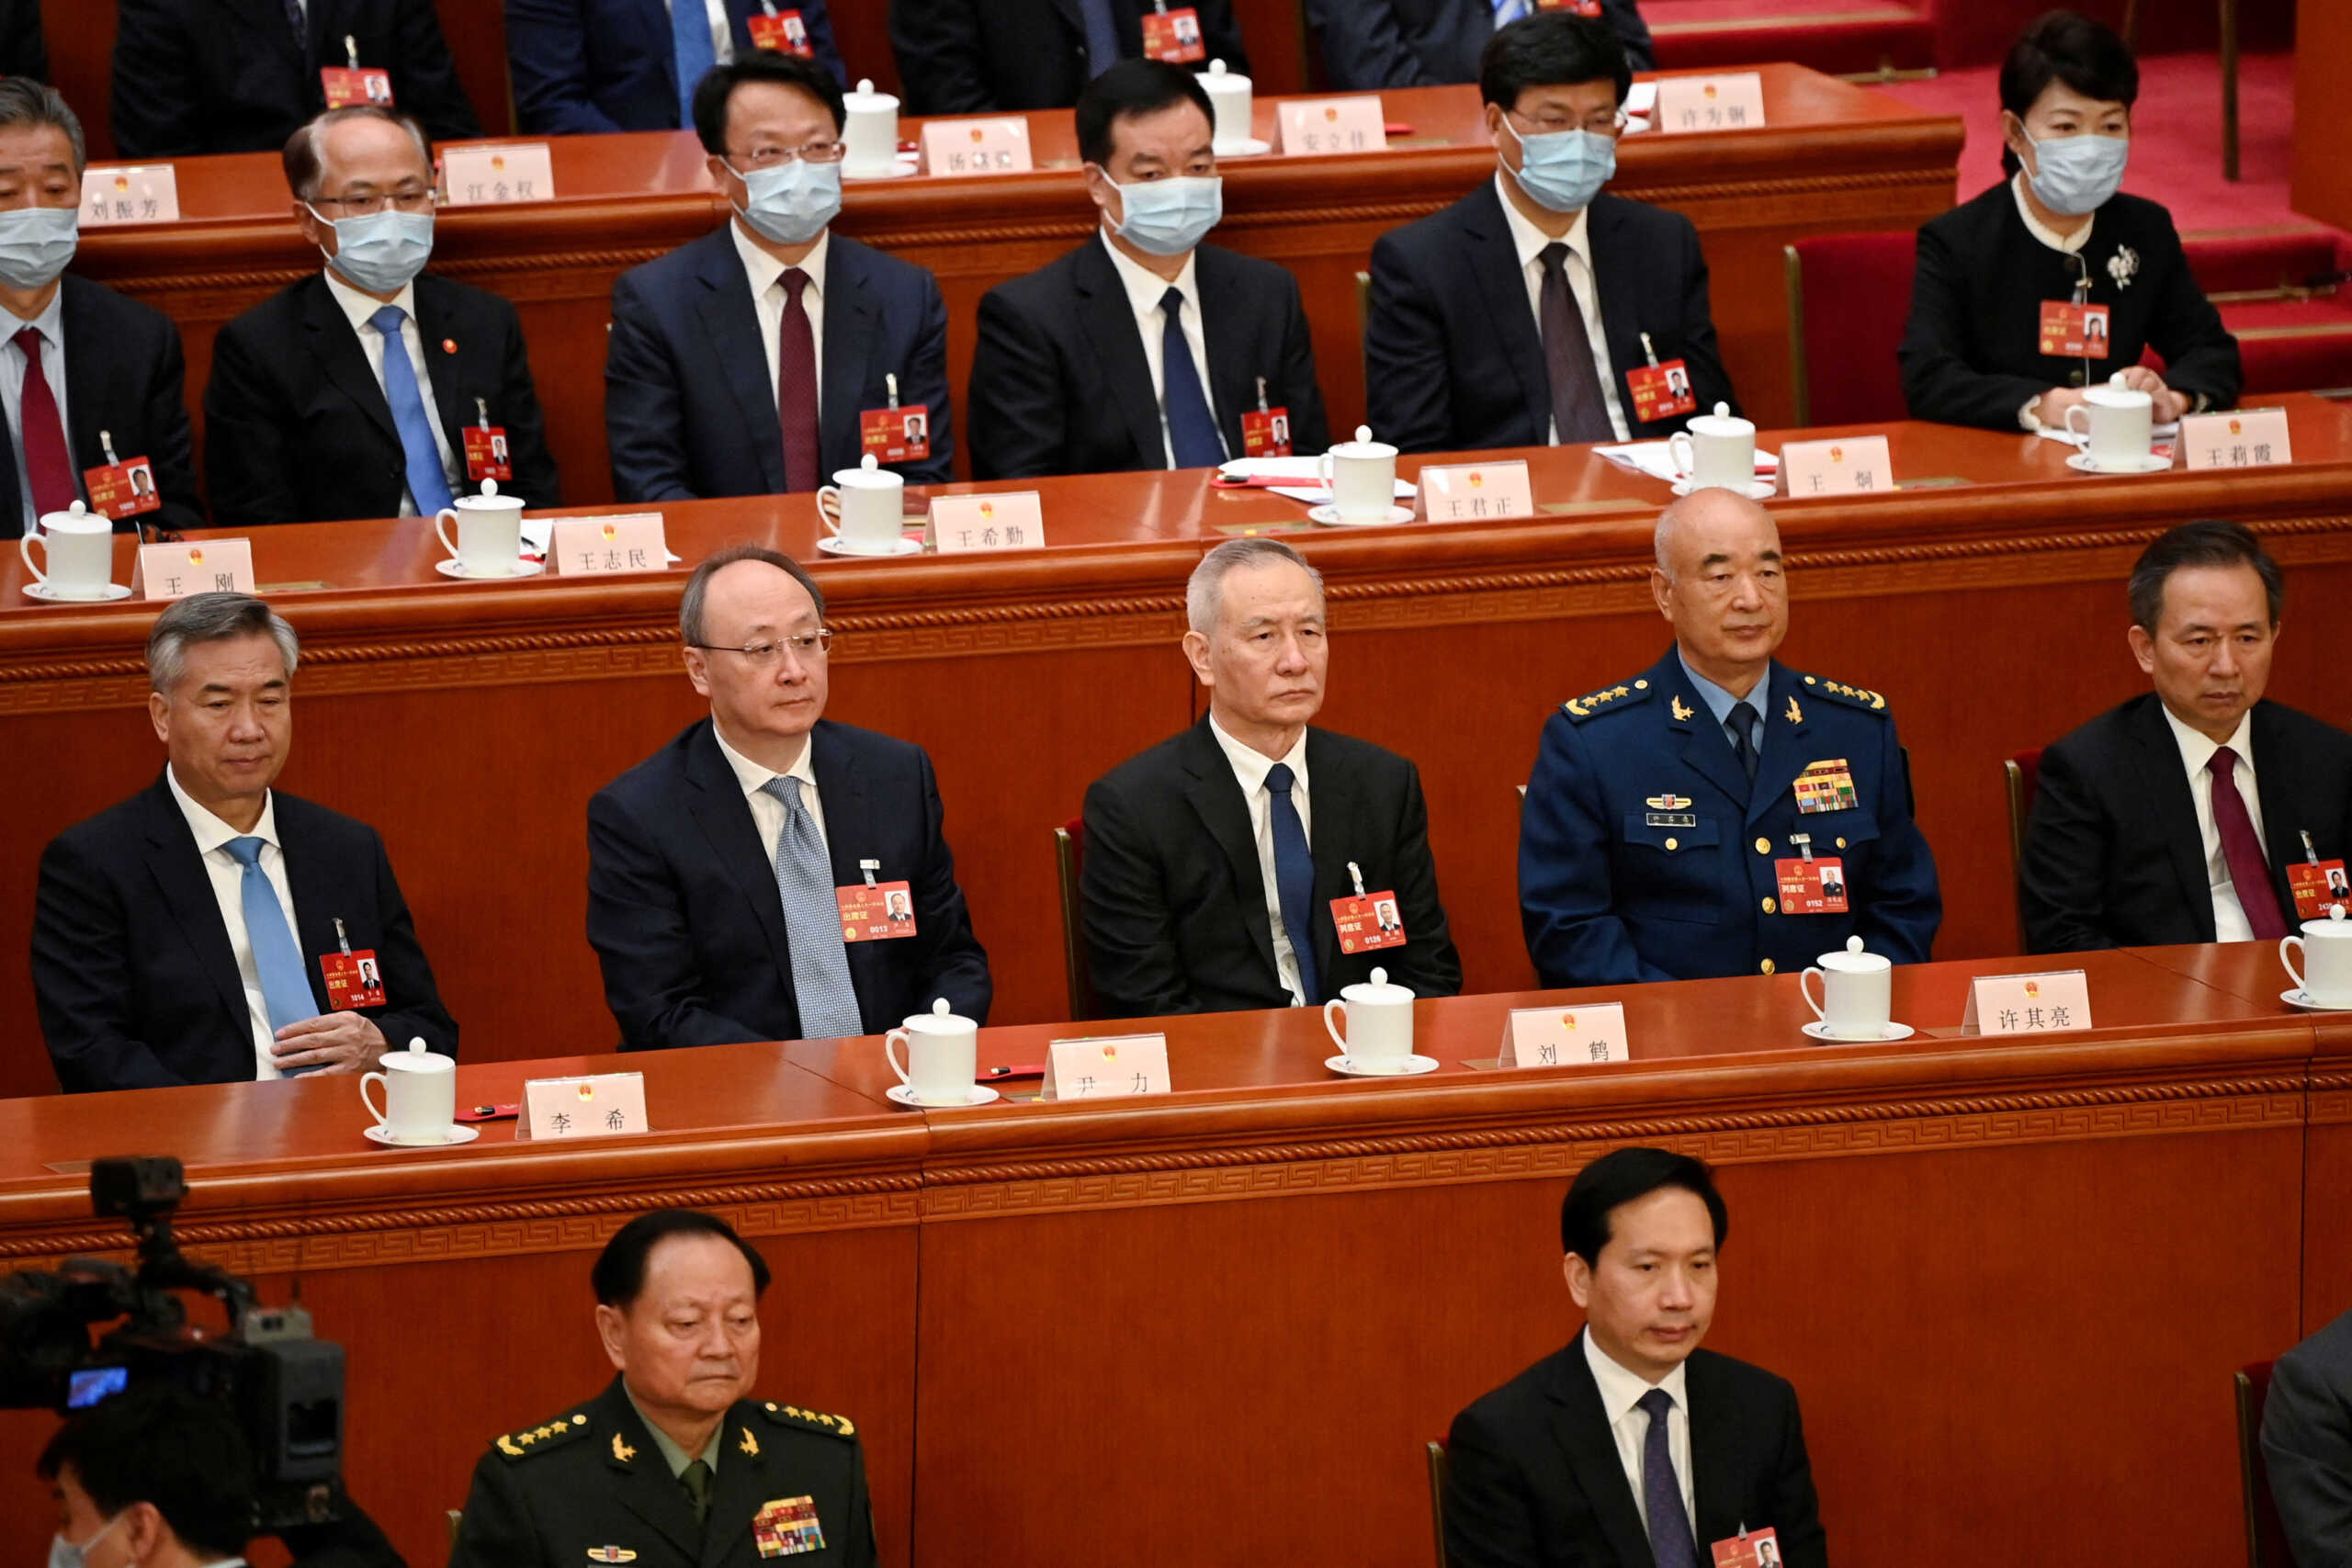 Ο νέος Πρωθυπουργός της Κίνας Λι Τζιανγκ - επιλεγμένος από τον ίδιο τον Σι Τζινπίνγκ